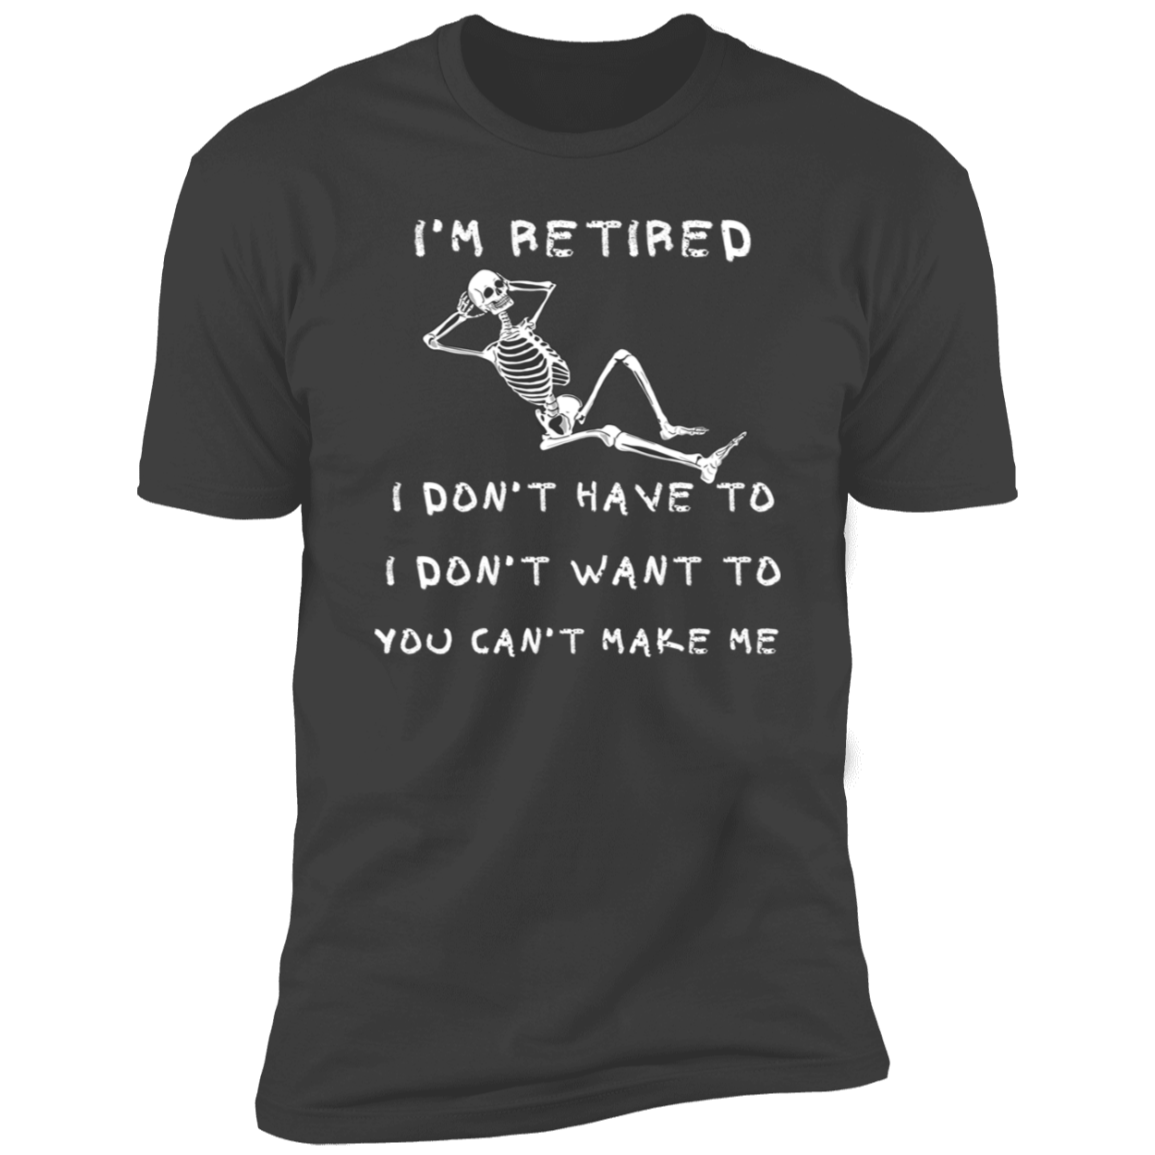 Retired / Men's  Short Sleeve T-Shirt /Summer Time Tee